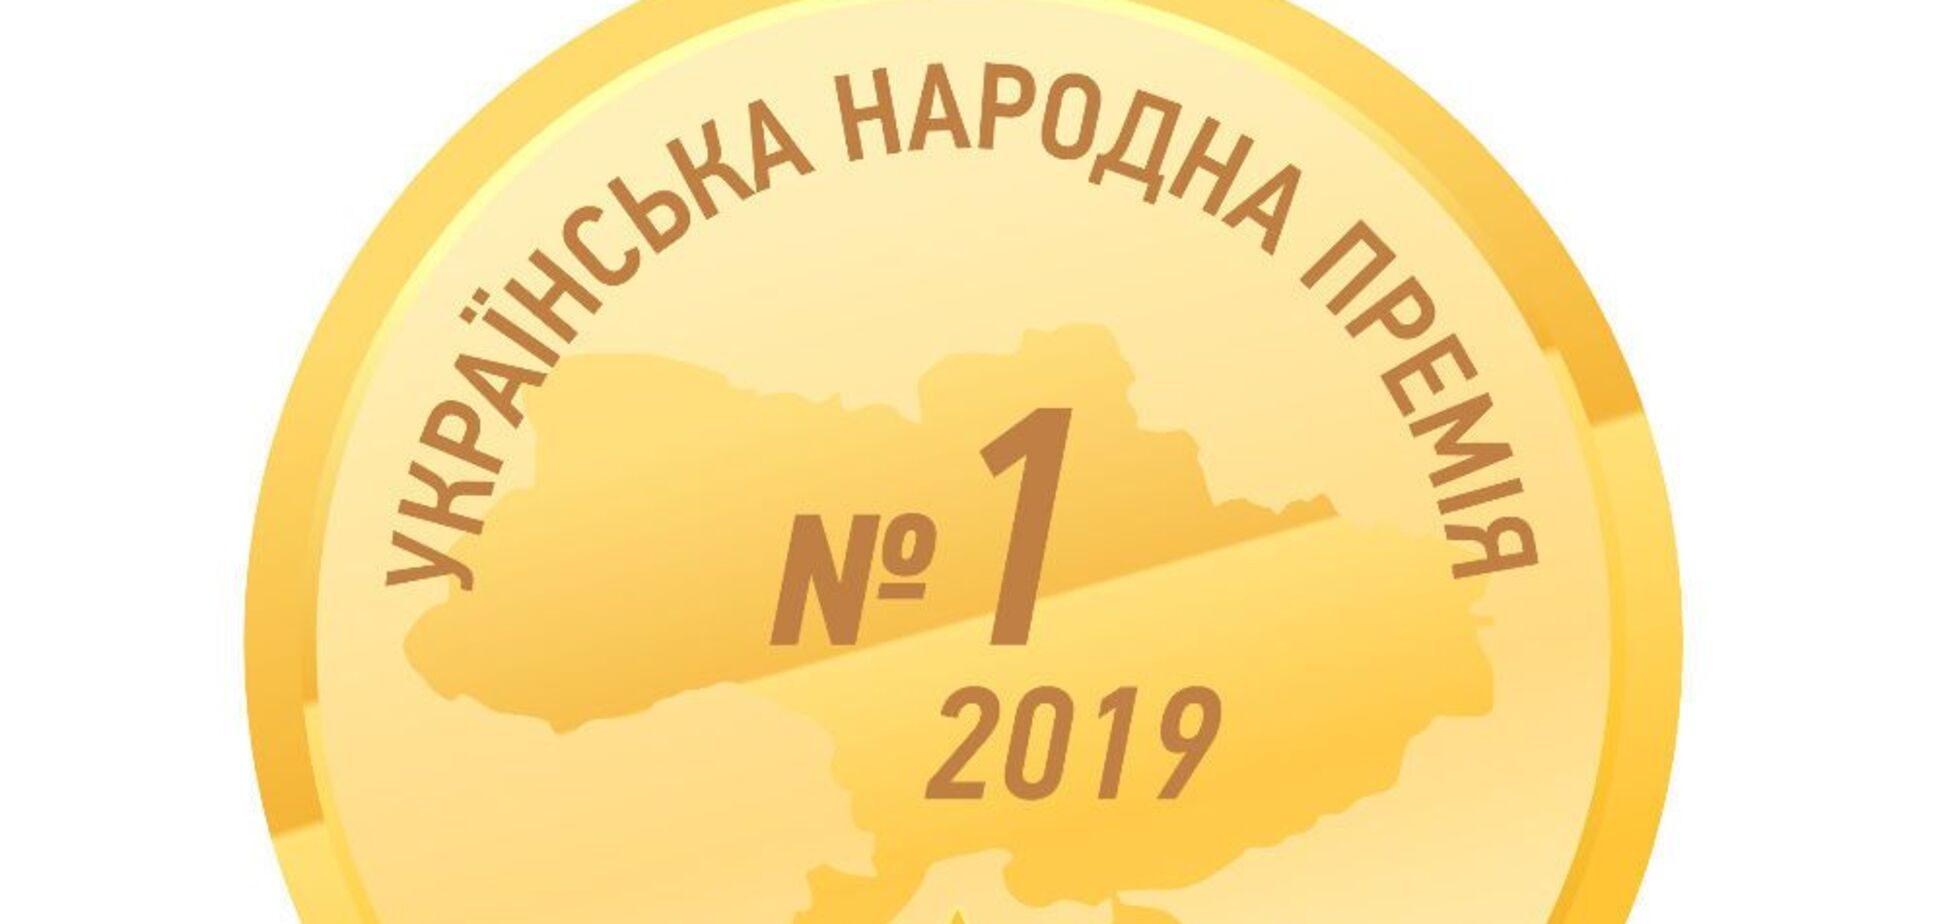 Українська народна премія–2019: обрано кращих з кращих серед лікарських засобів, товарів медичного призначення та послуг